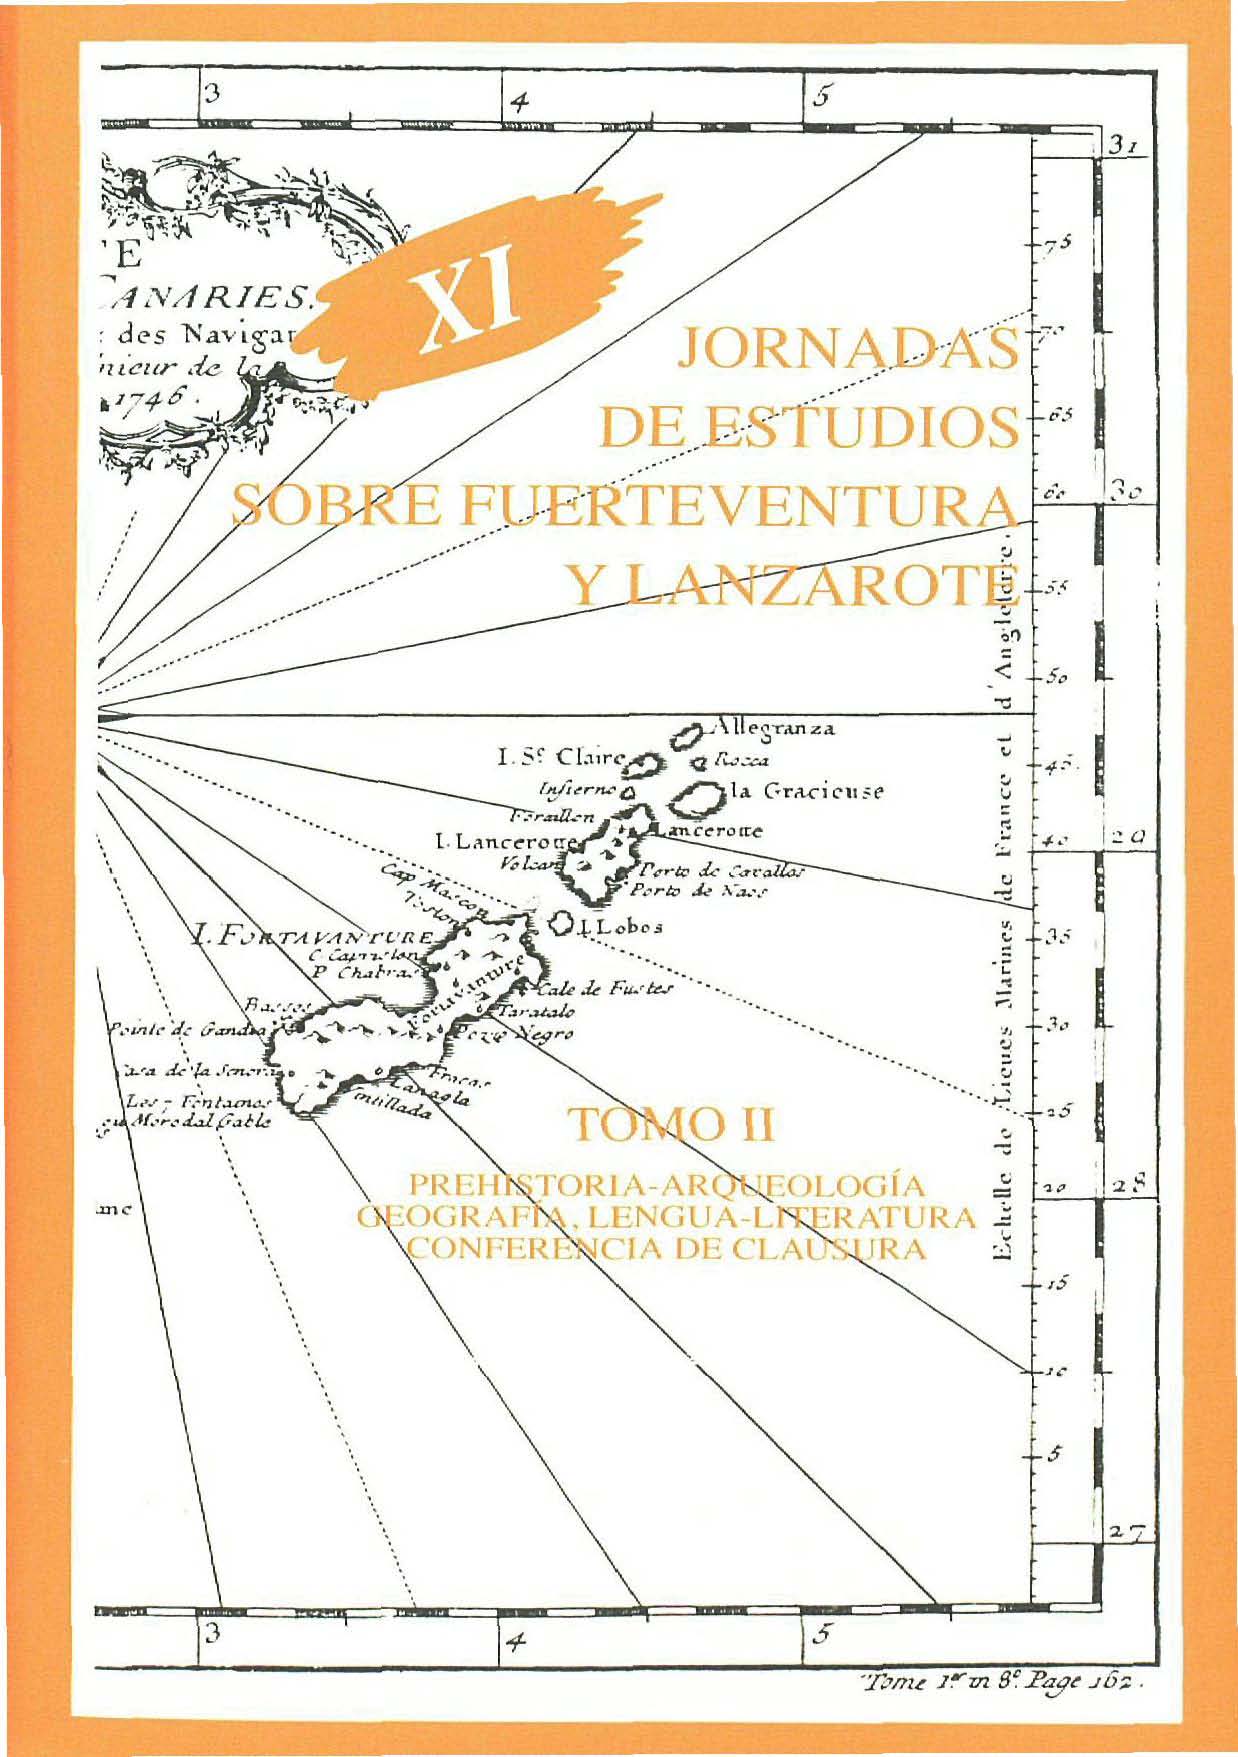 La variante hispánica de la literatura canaria en Fuerteventura y Lanzarote